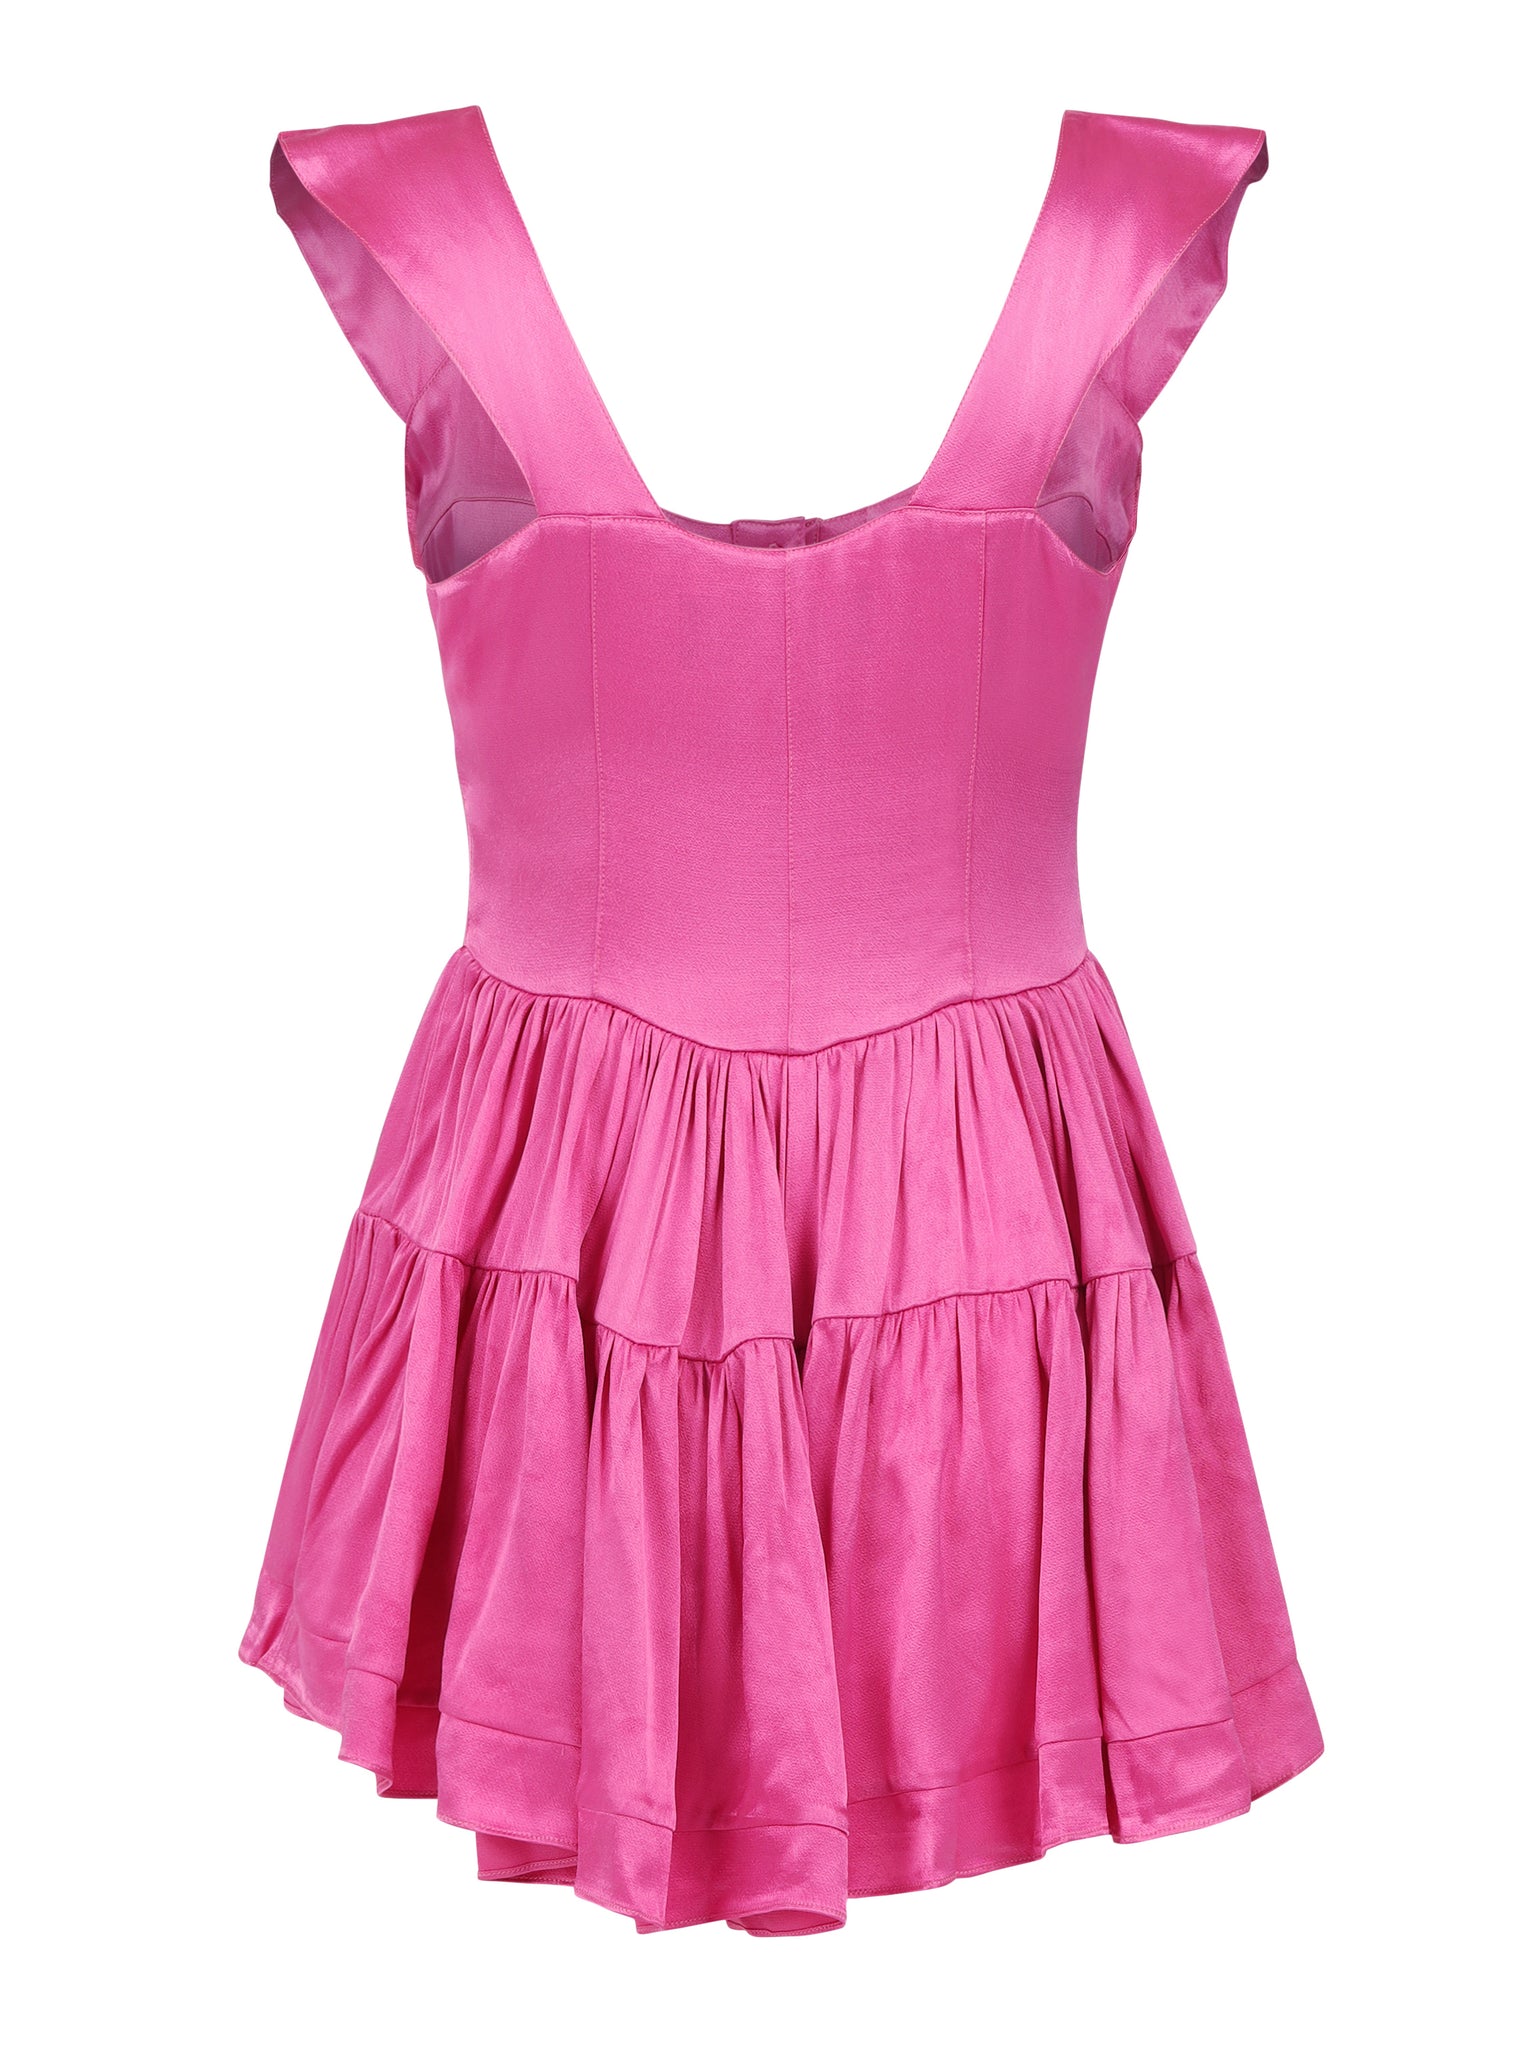 The Elisabeth Romper Dress - Hot Pink Satin